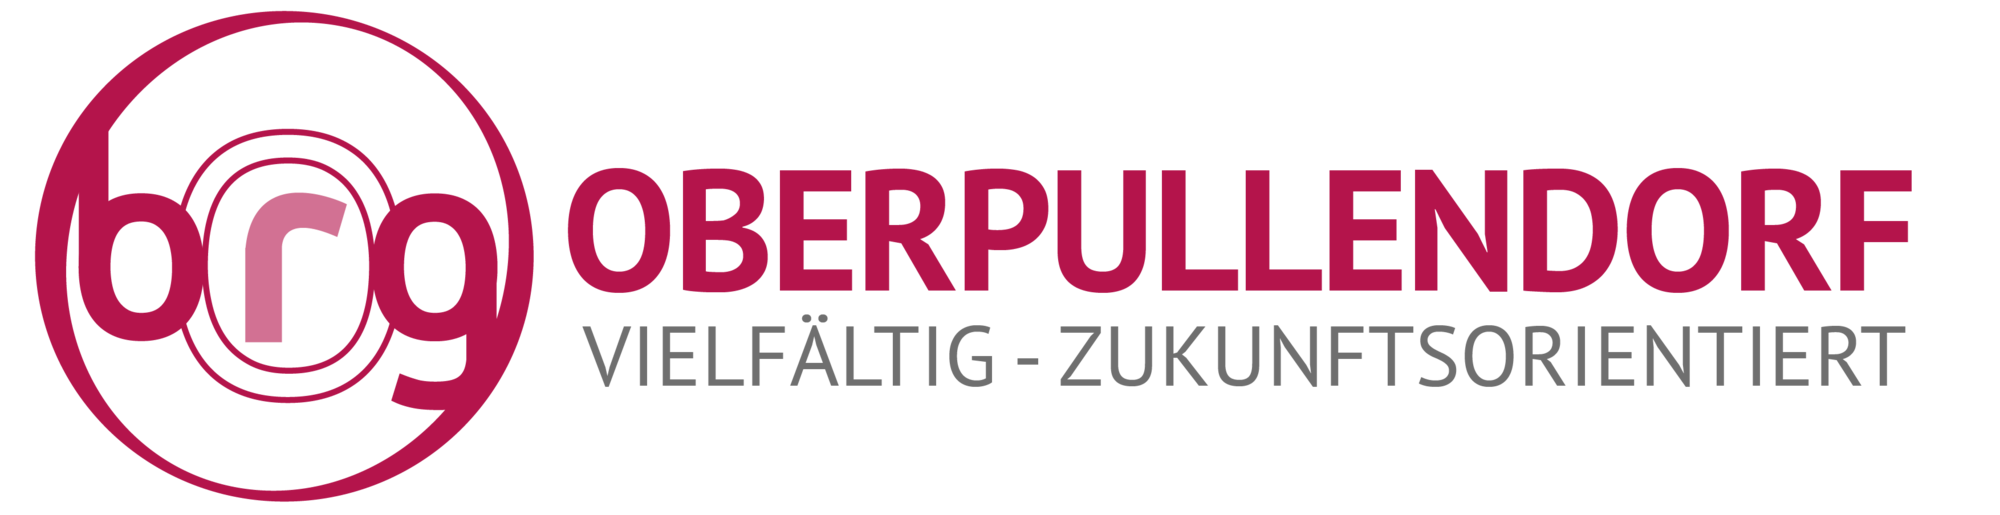 Borg Oberpullendorf Logo